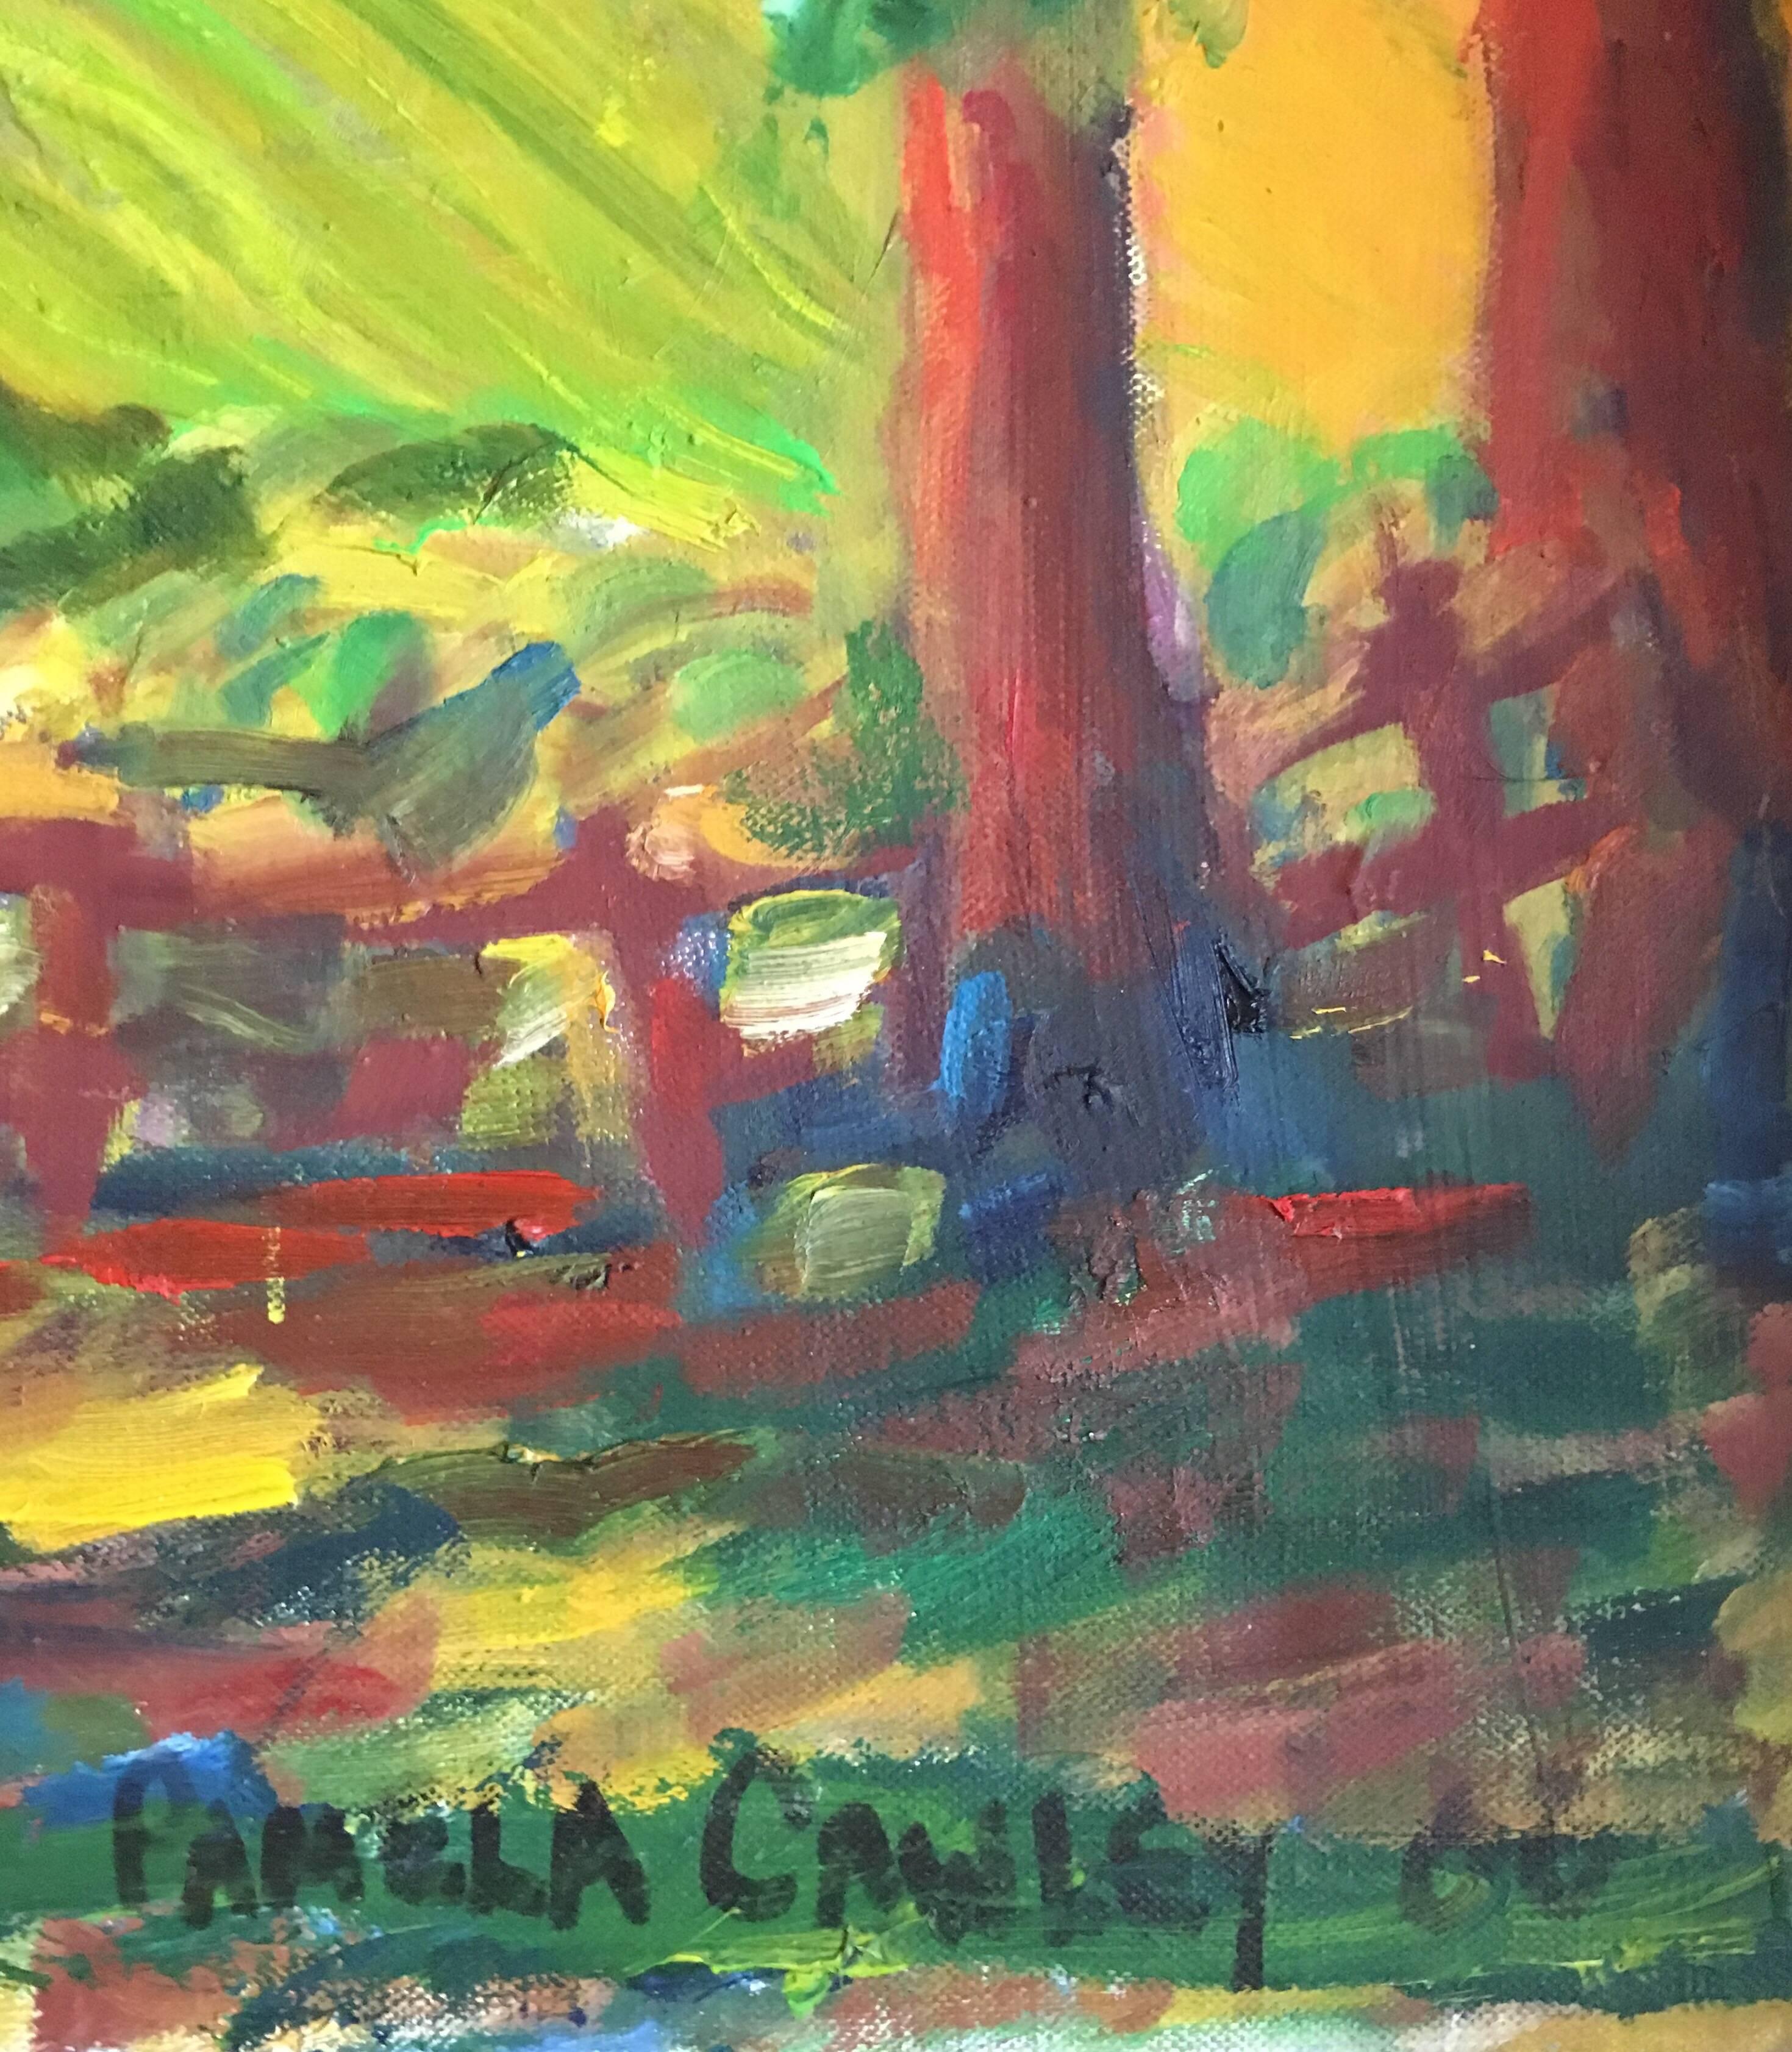 Landschaft auf dem Lande, Impressionist, Signiertes Ölgemälde
von Pamela Cawley, Britin, 20. Jahrhundert
Signiert in der rechten unteren Ecke
Ölgemälde auf Leinwand, ungerahmt

Leinwand: 26 x 30 Zoll 

Atemberaubendes originales impressionistisches